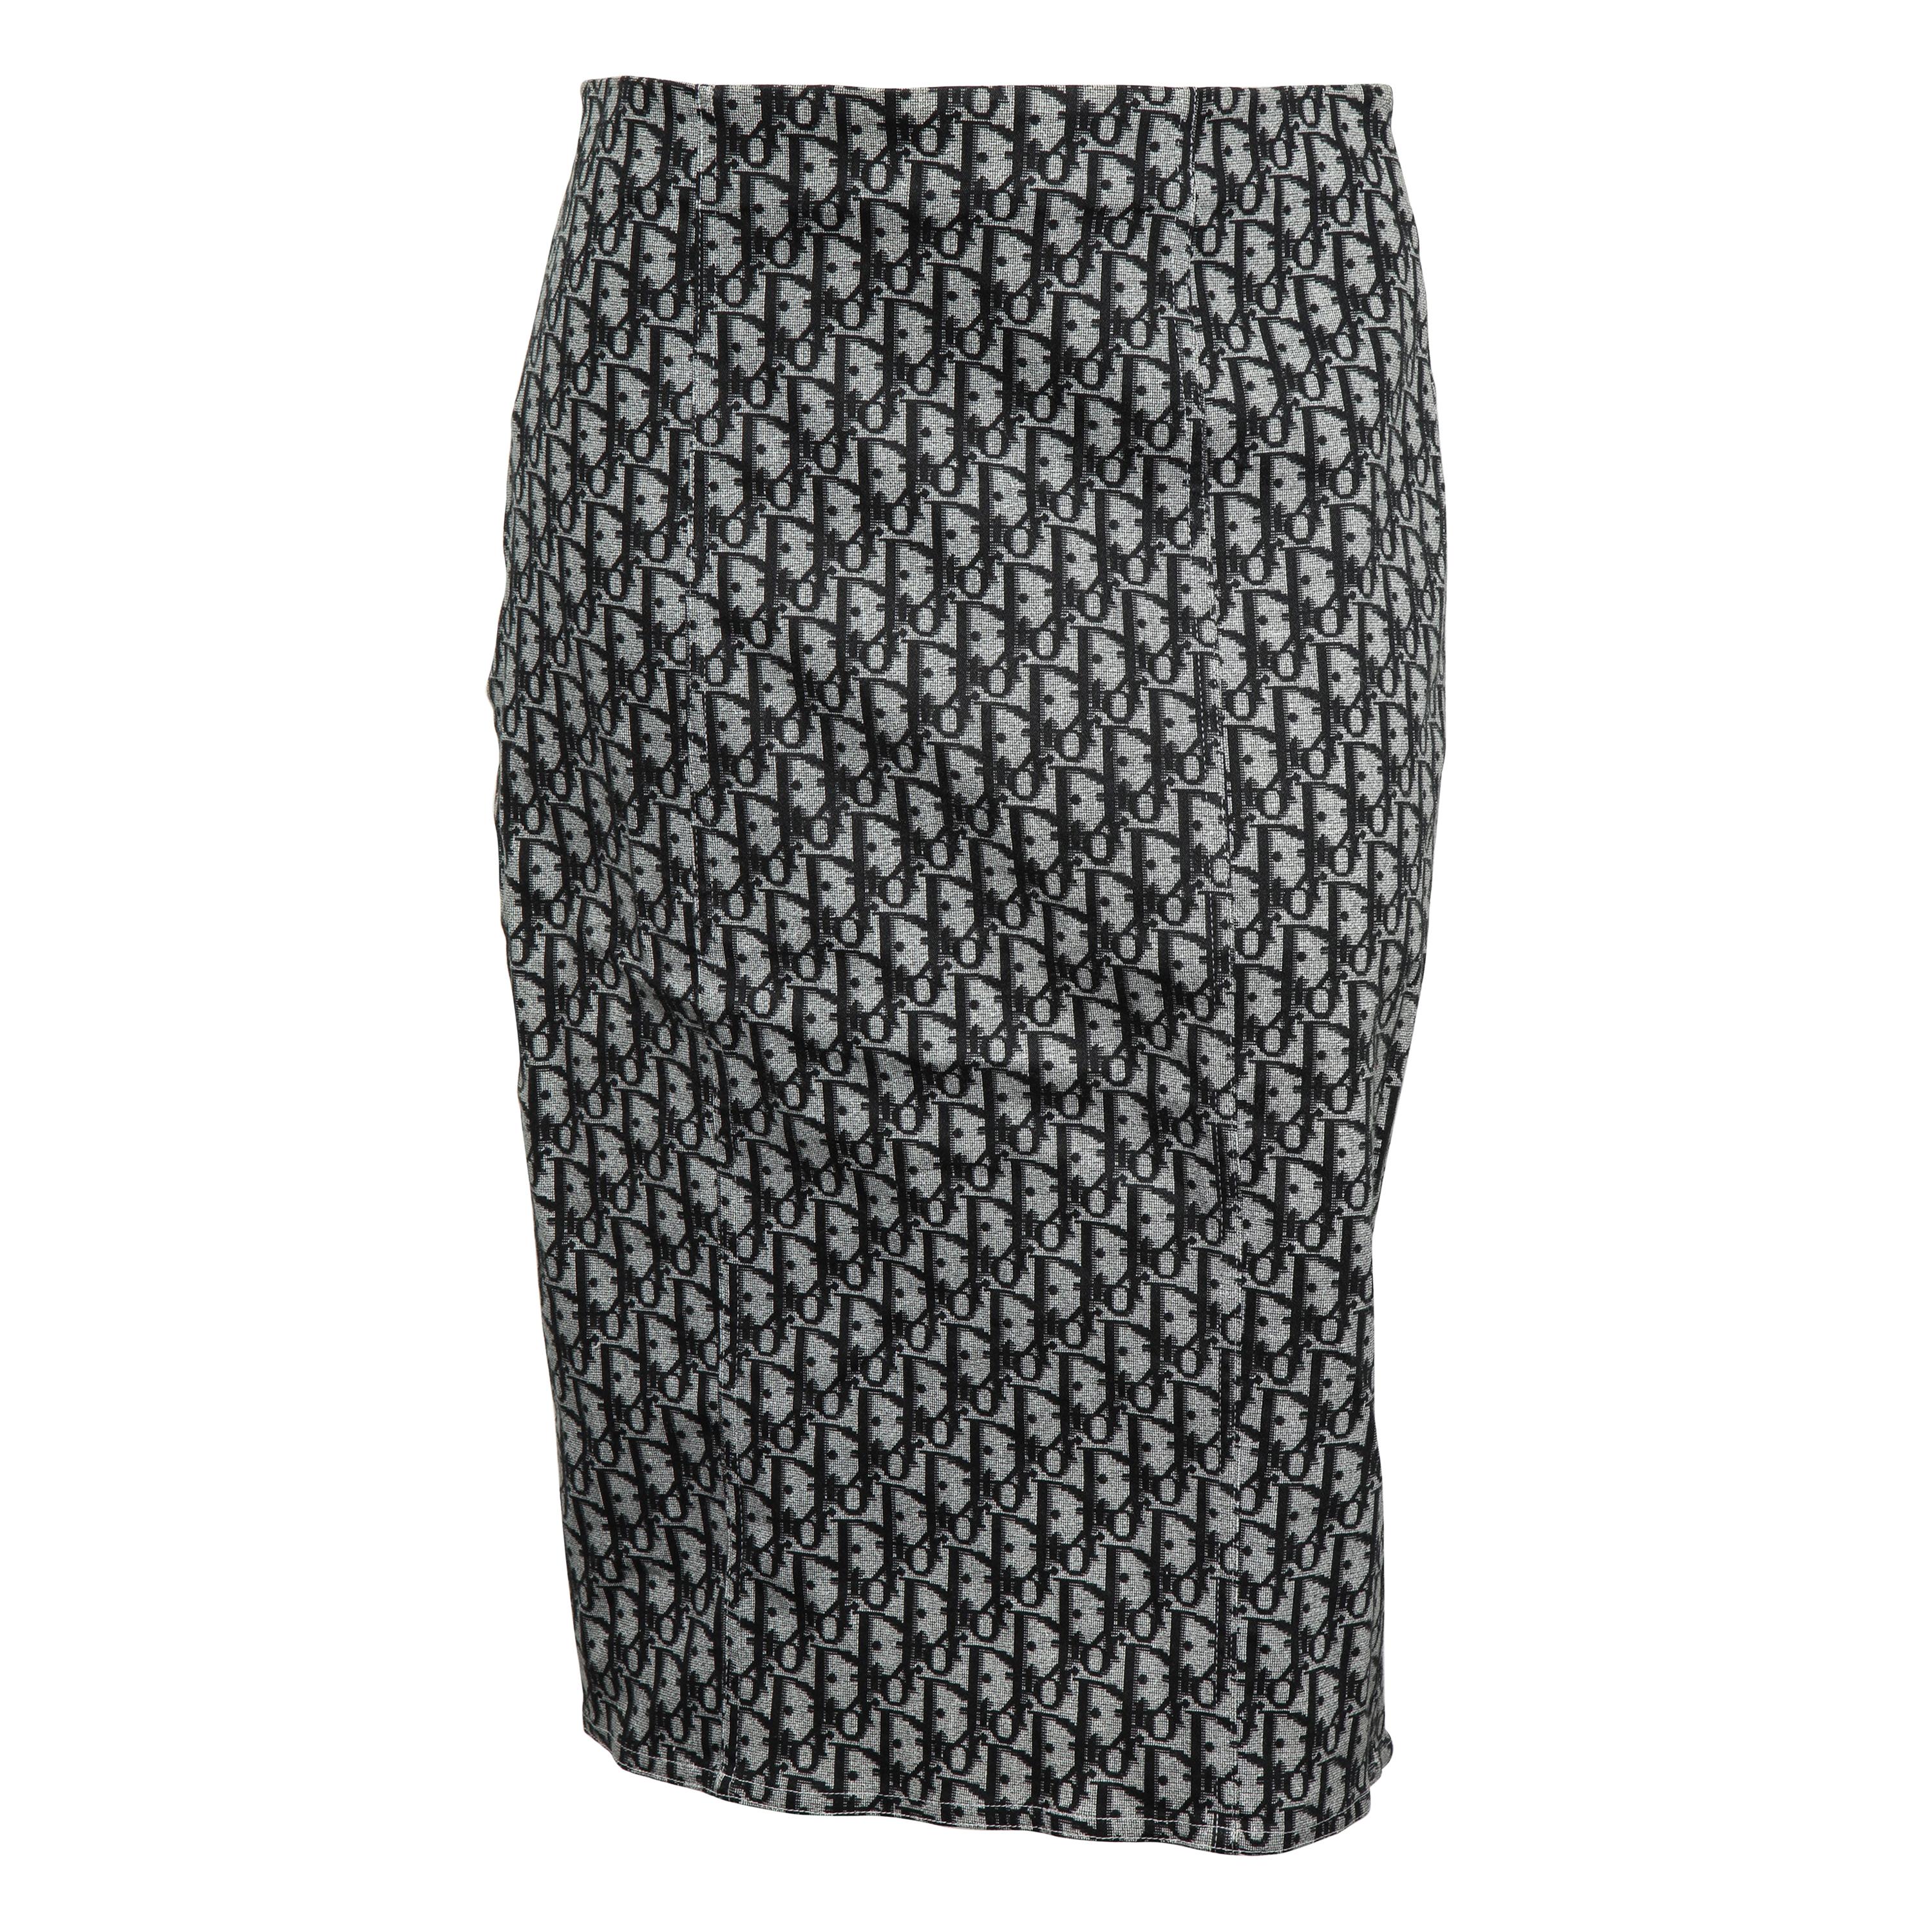 John Galliano for Christian Dior Black Trotter logo Skirt  For Sale